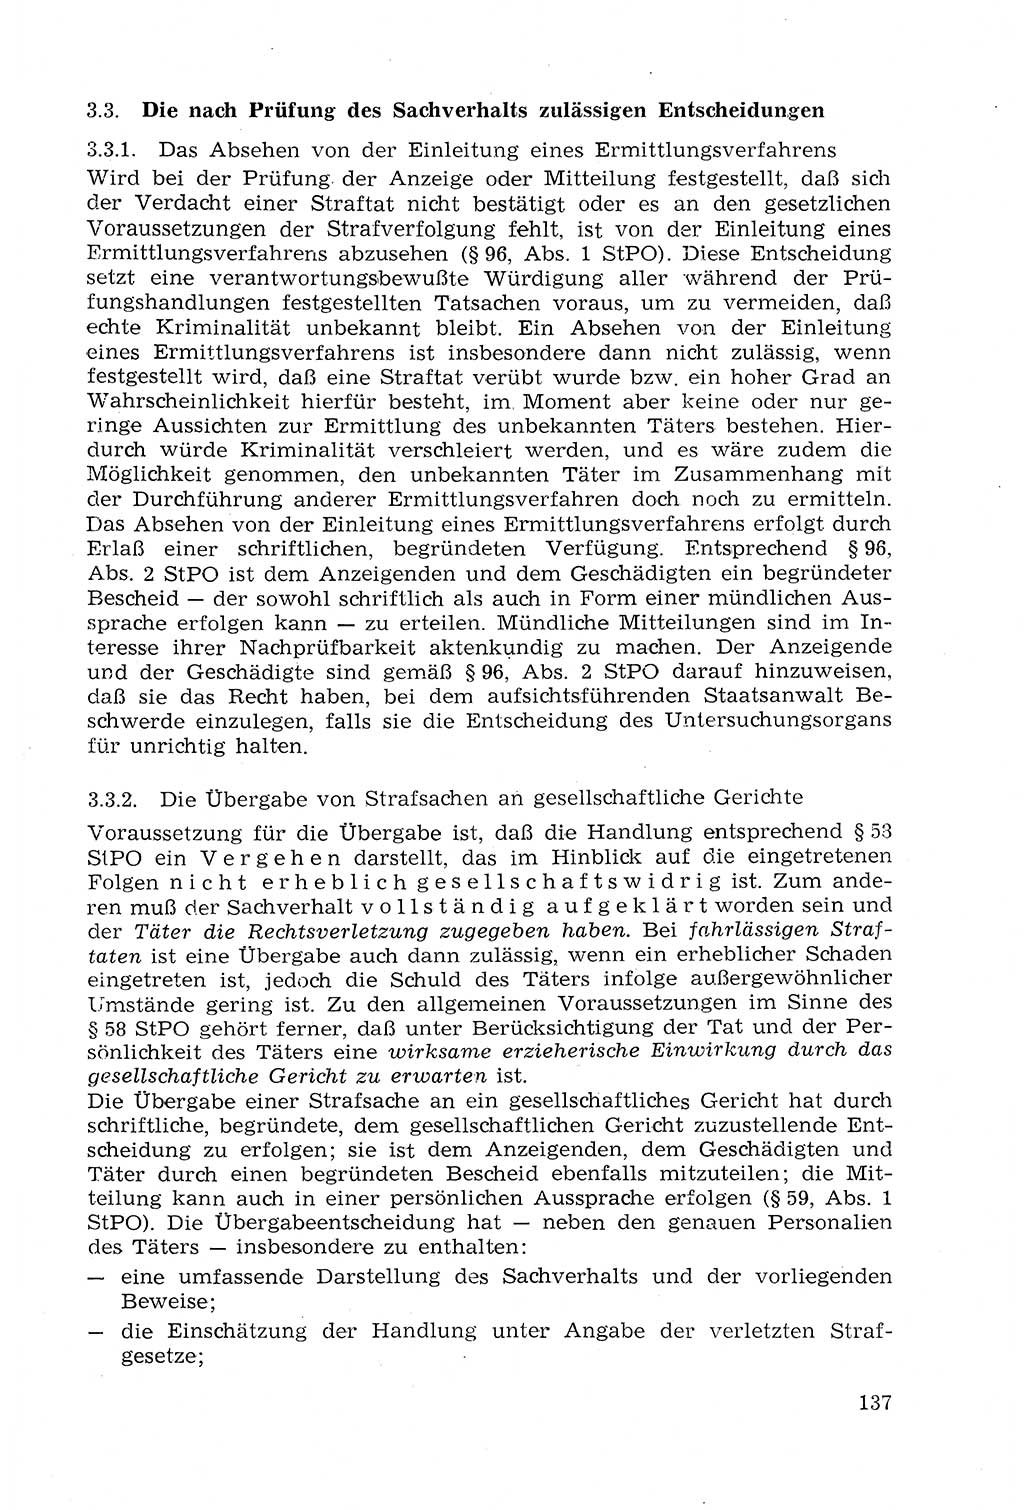 Strafprozeßrecht der DDR (Deutsche Demokratische Republik), Lehrmaterial 1969, Seite 137 (Strafprozeßr. DDR Lehrmat. 1969, S. 137)